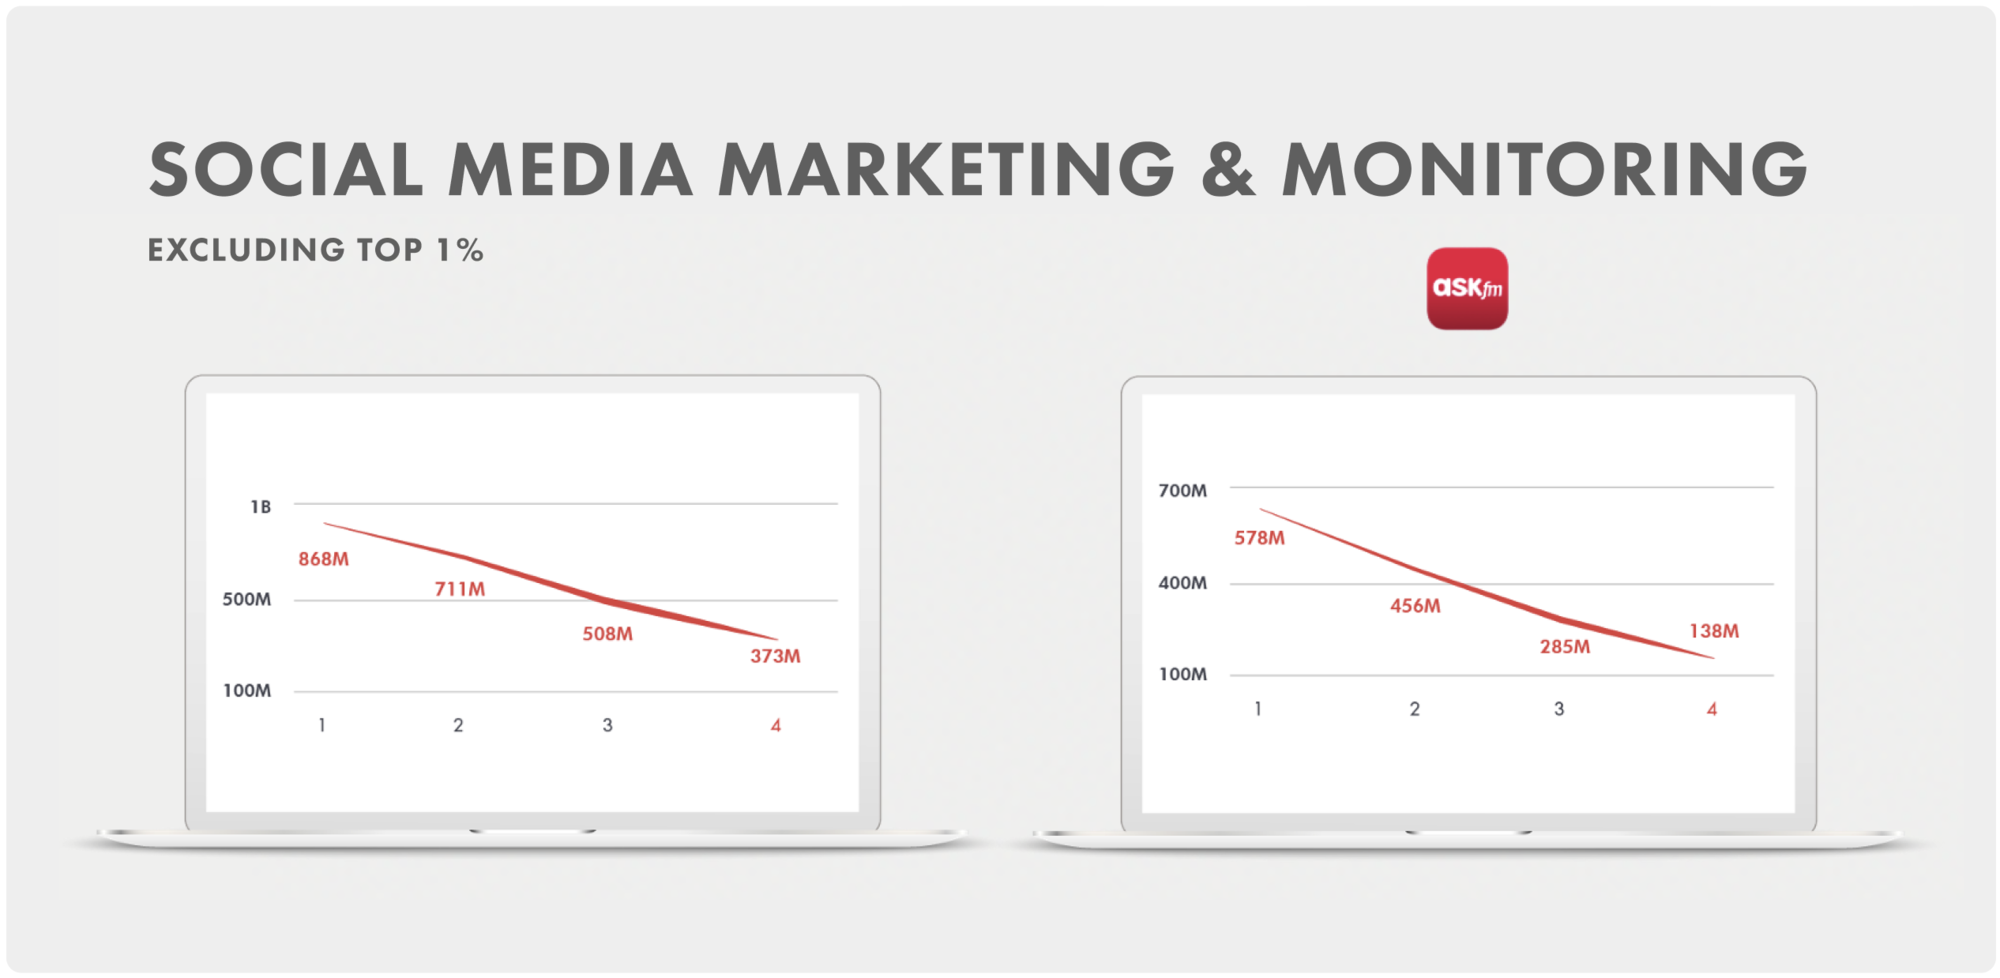 Social media marketing & monitoring